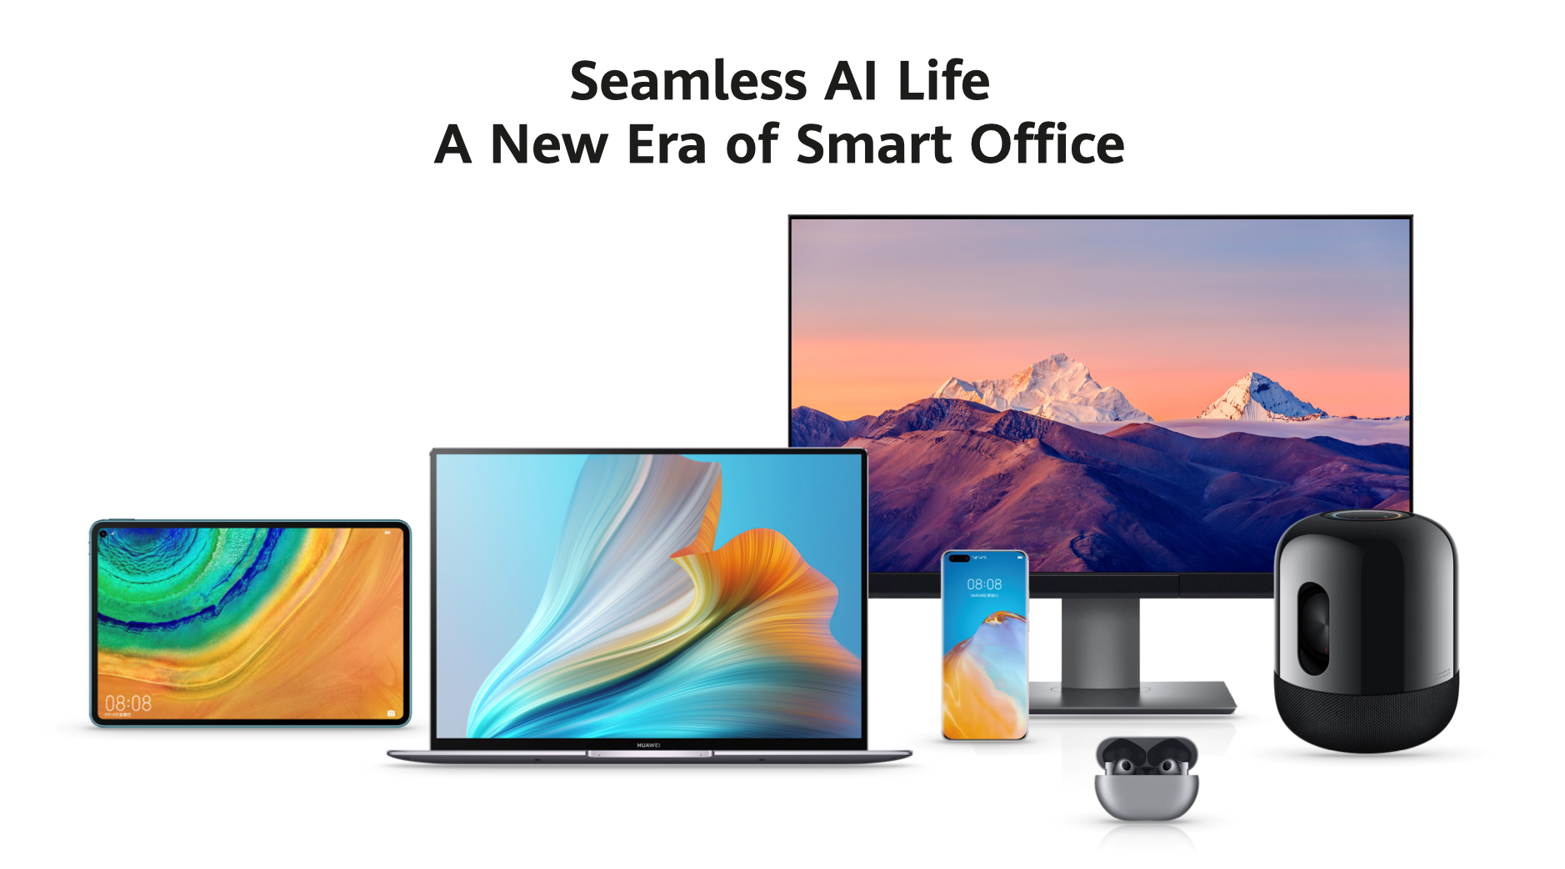 Seamless Al Life | Huawei | การเดินทางกว่า 5 ปีของหัวเว่ย จากจุดเริ่มต้นสู่ความล้ำหน้าทุกเทคโนโลยี  พัฒนามาอย่างต่อเนื่องจนถึง HUAWEI MateBook 14 ในวันนี้